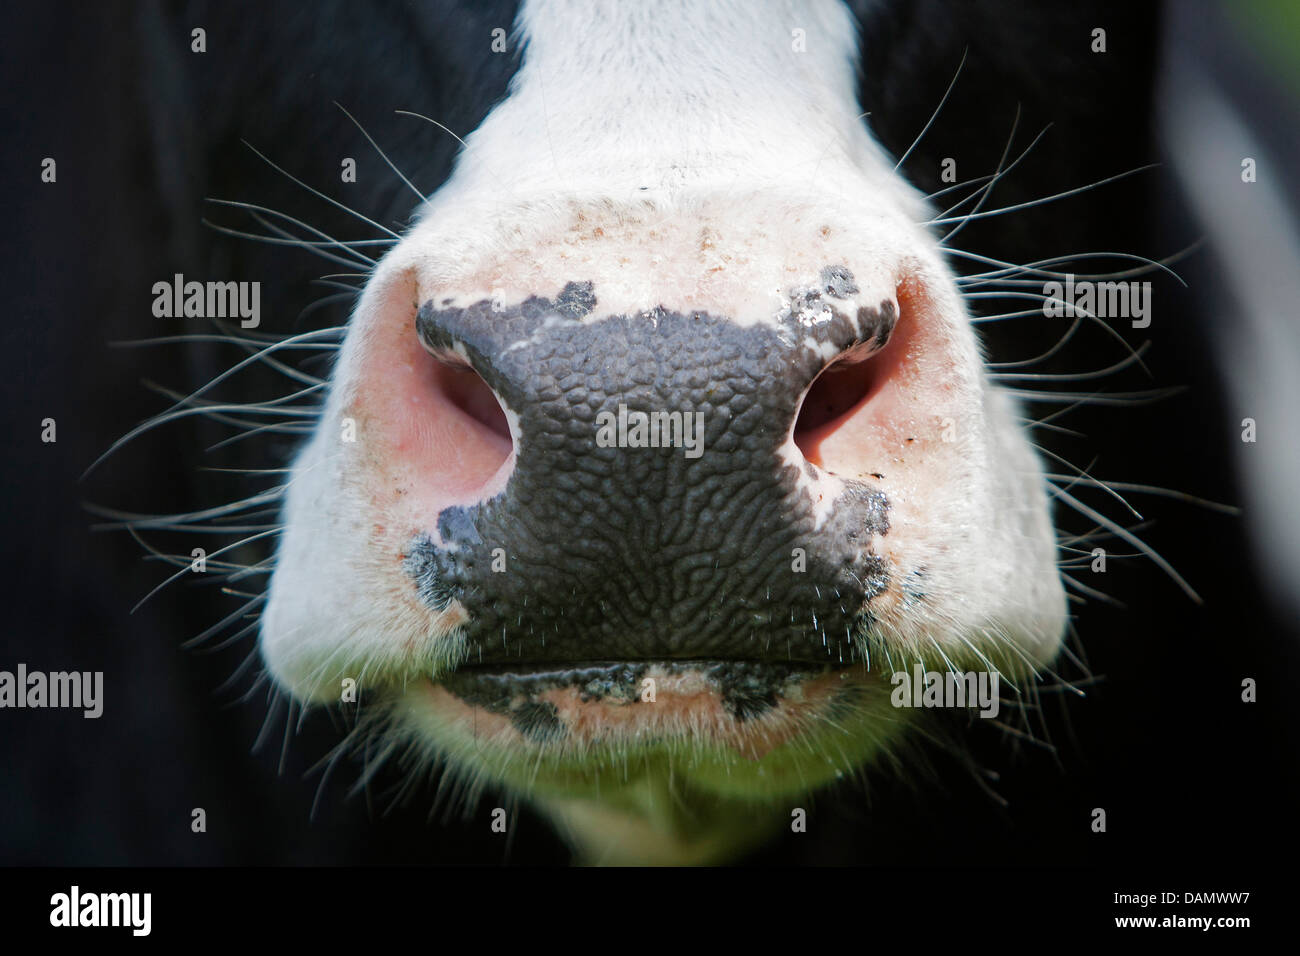 Les bovins domestiques (Bos primigenius f. taurus), de la bouche d'une vache, Allemagne Banque D'Images